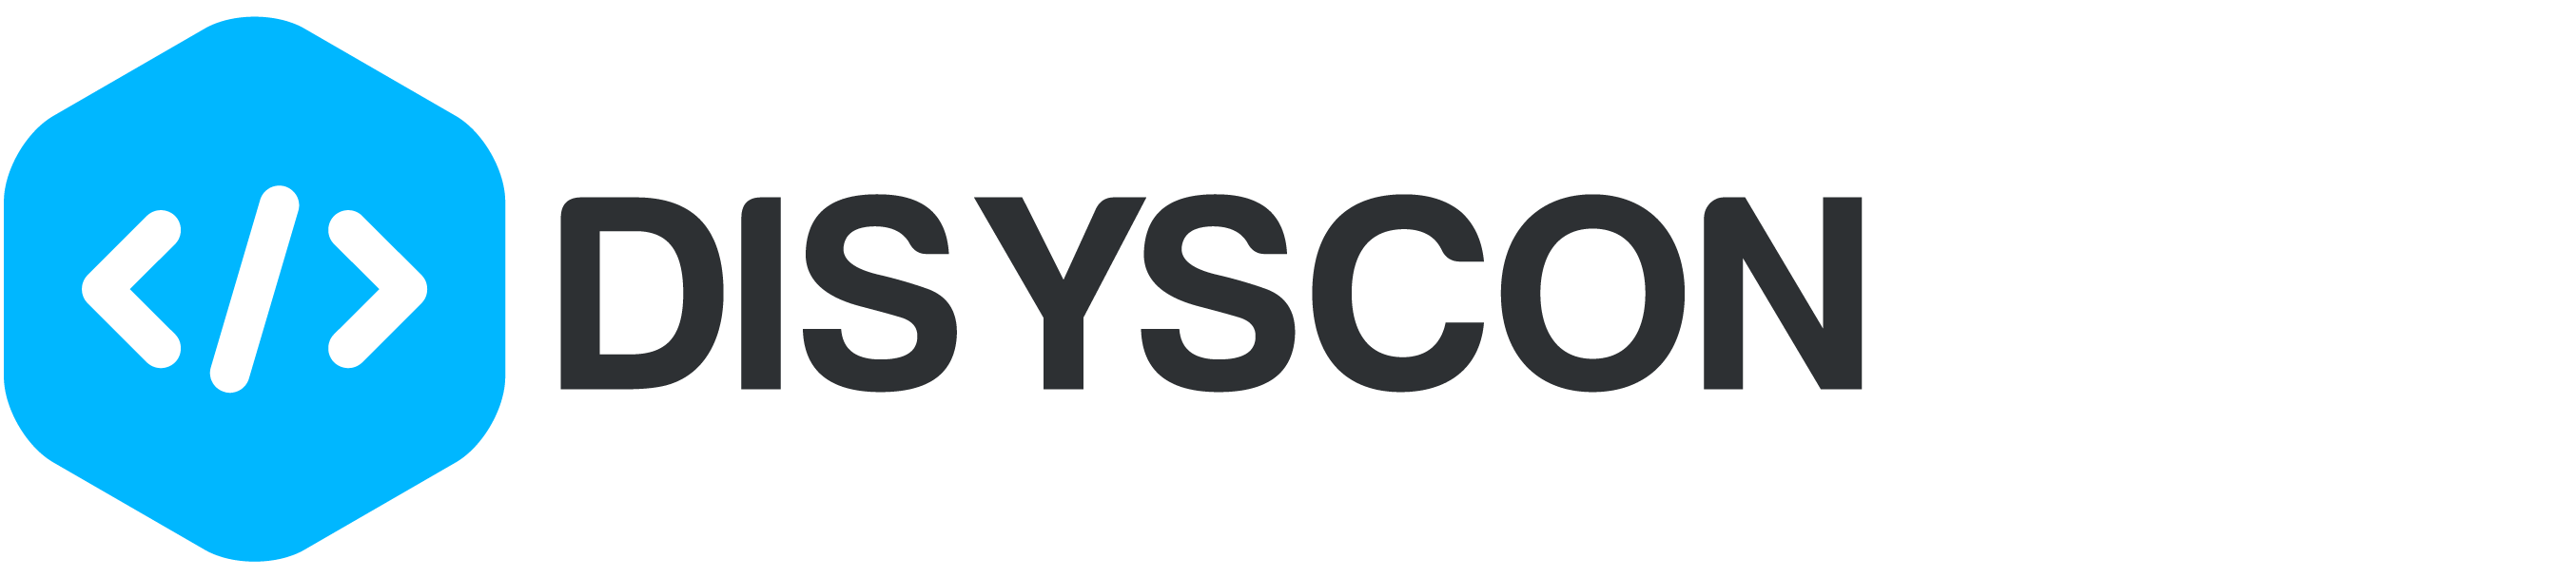 Disyscon